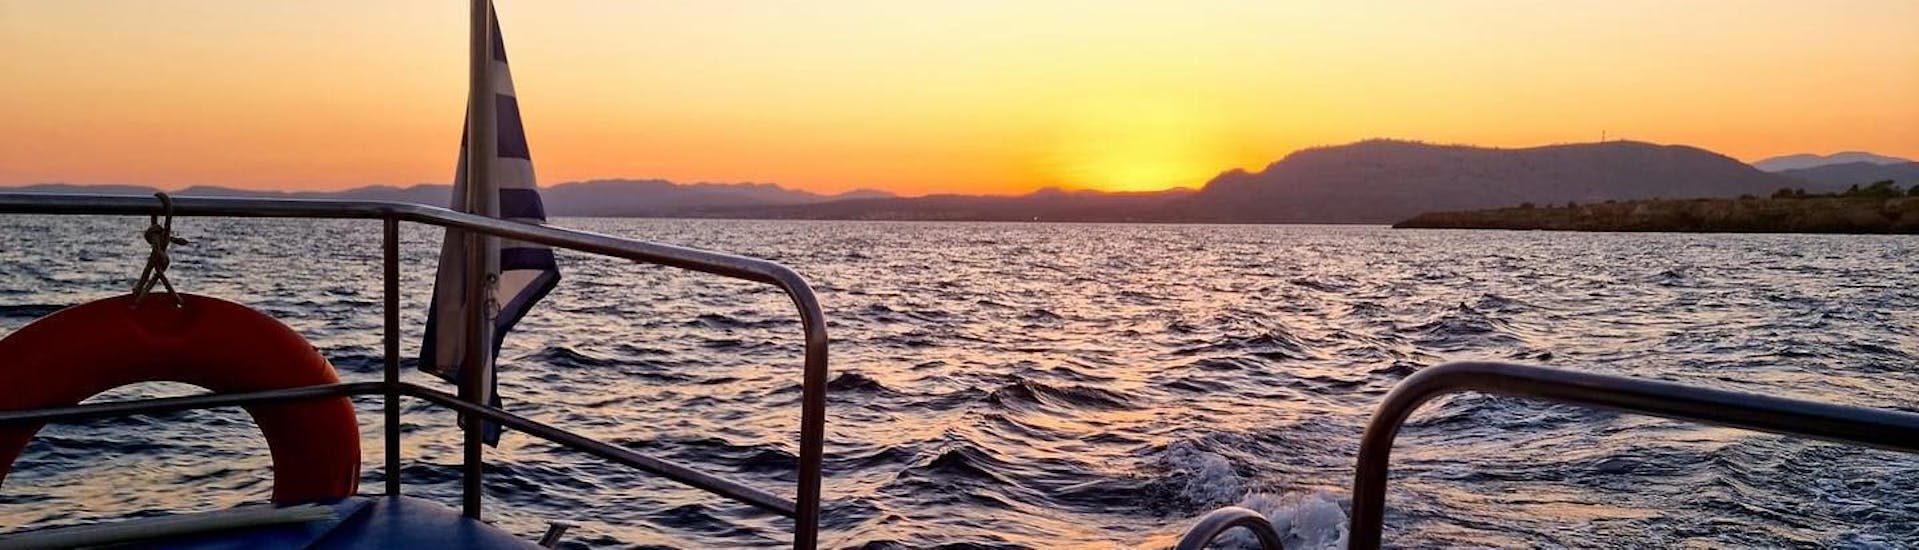 La barca naviga sotto il tramonto durante il giro  in barca privata con fondo di vetro al tramonto a Pefkos con sosta per nuotare nella baia di Navarone.